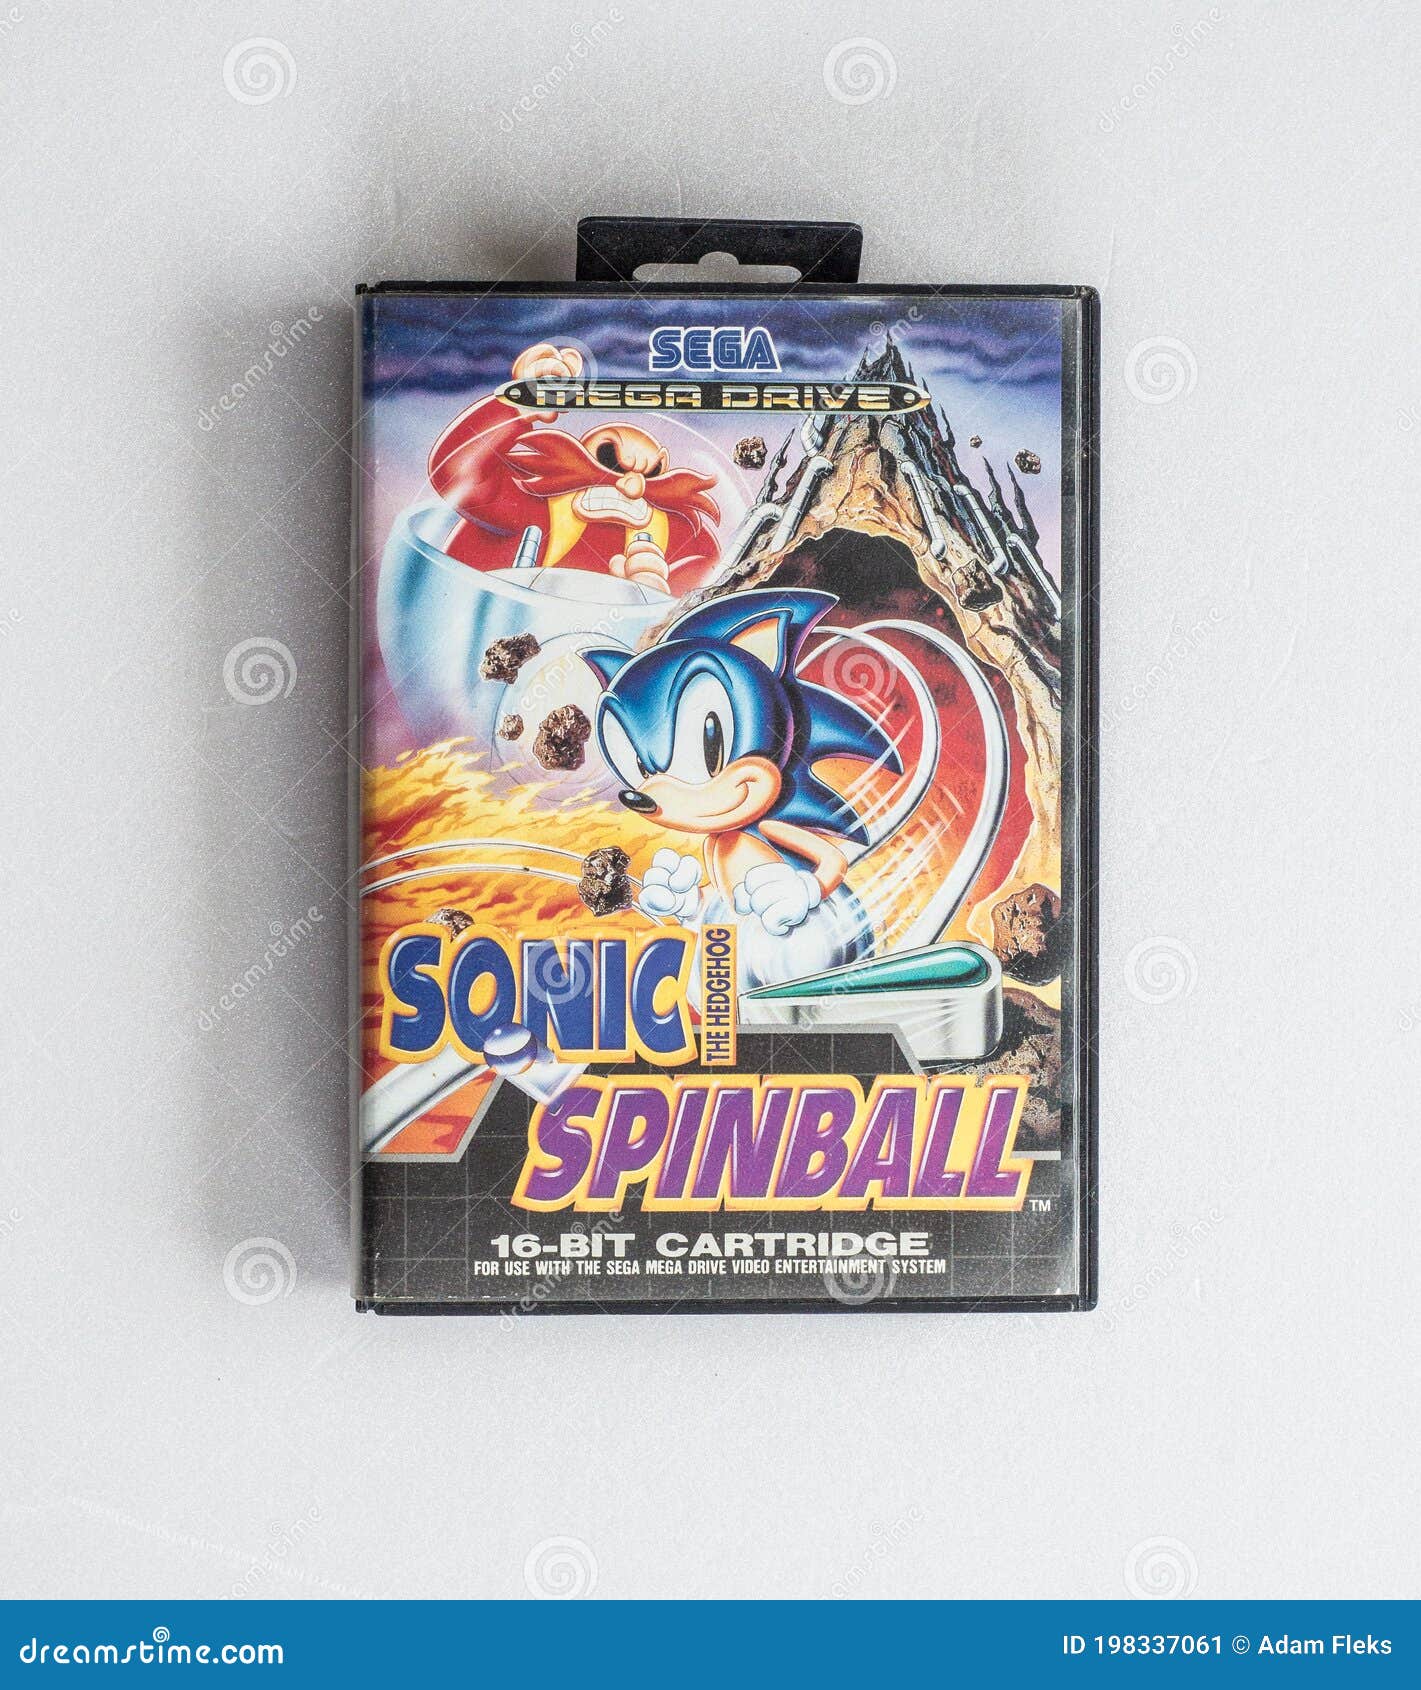 Sonic The Hedgehog Spinball e mais: confira os novos jogos de Mega